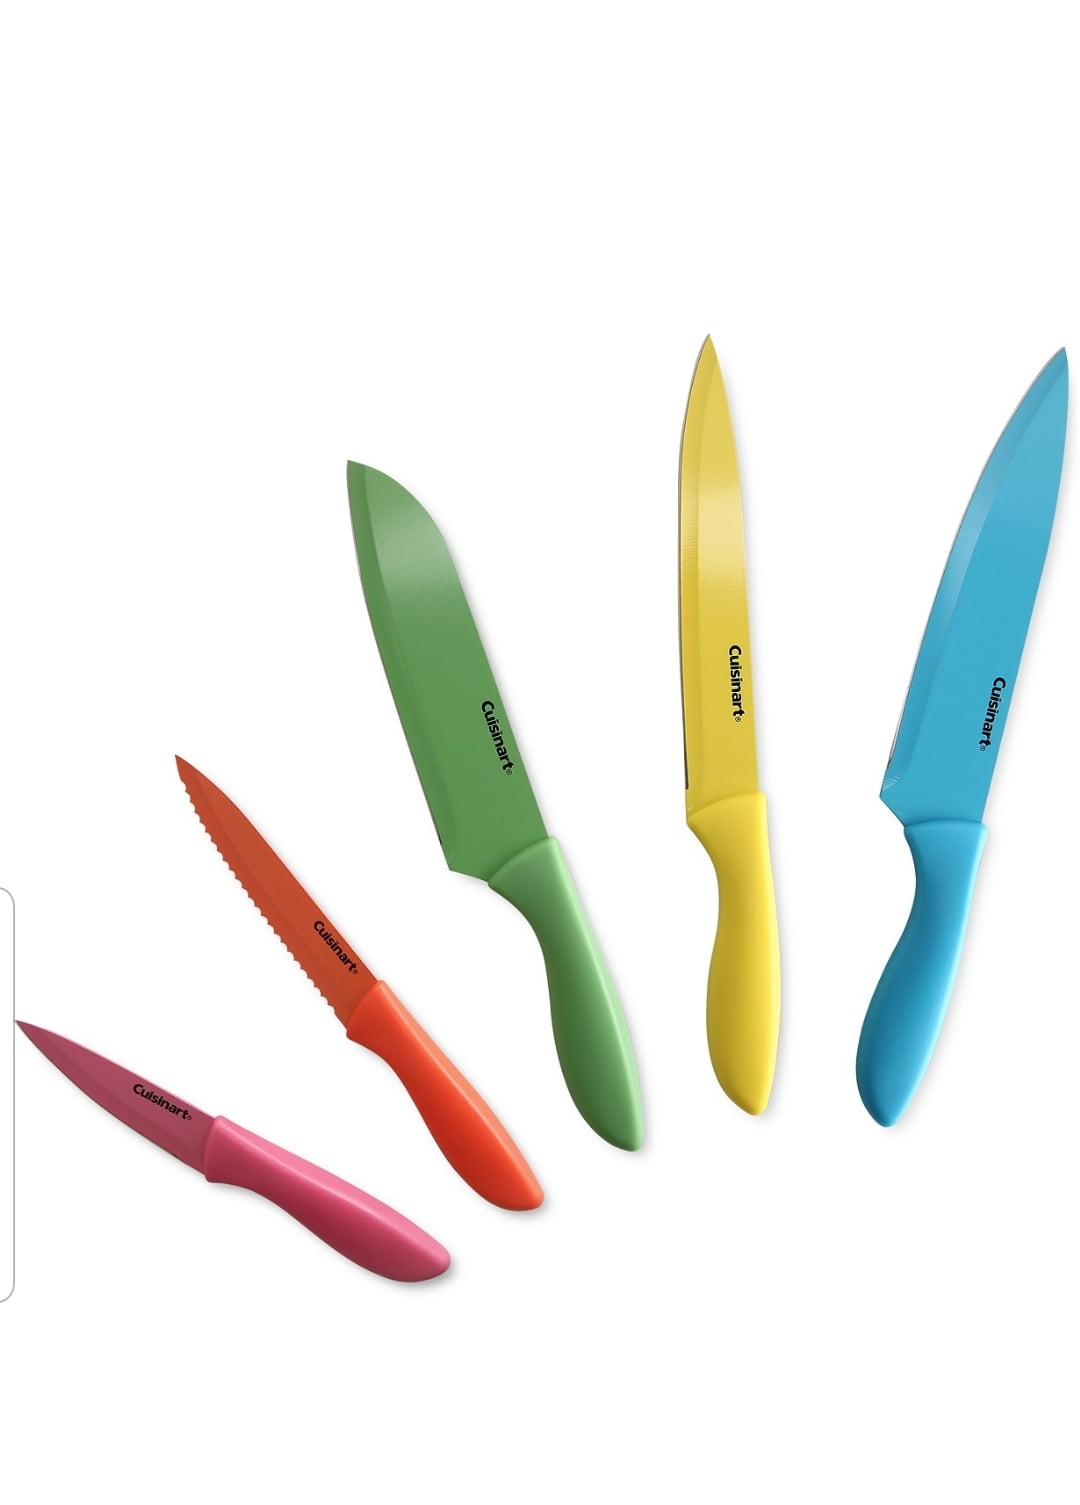 Set de cuchillos Cuisinart Graphix